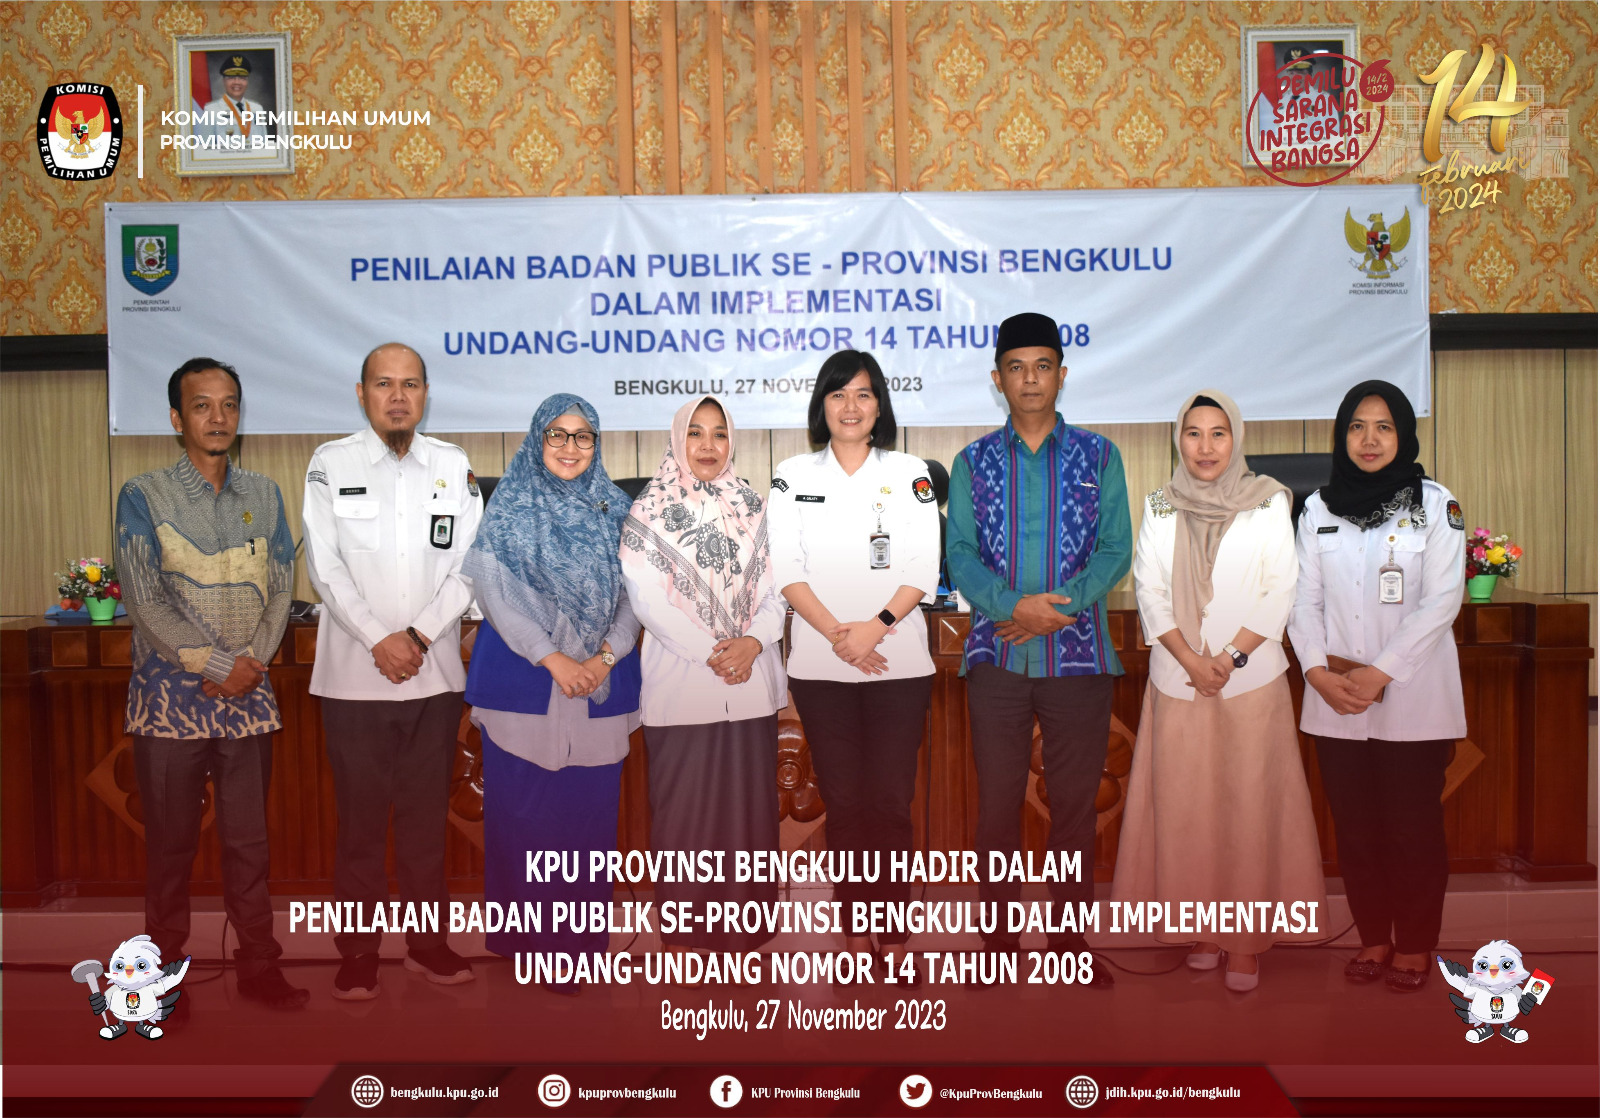 KPU Provinsi Bengkulu hadir dalam Penilaian Badan Publik Se-Provinsi Bengkulu Senin 27 November 2023